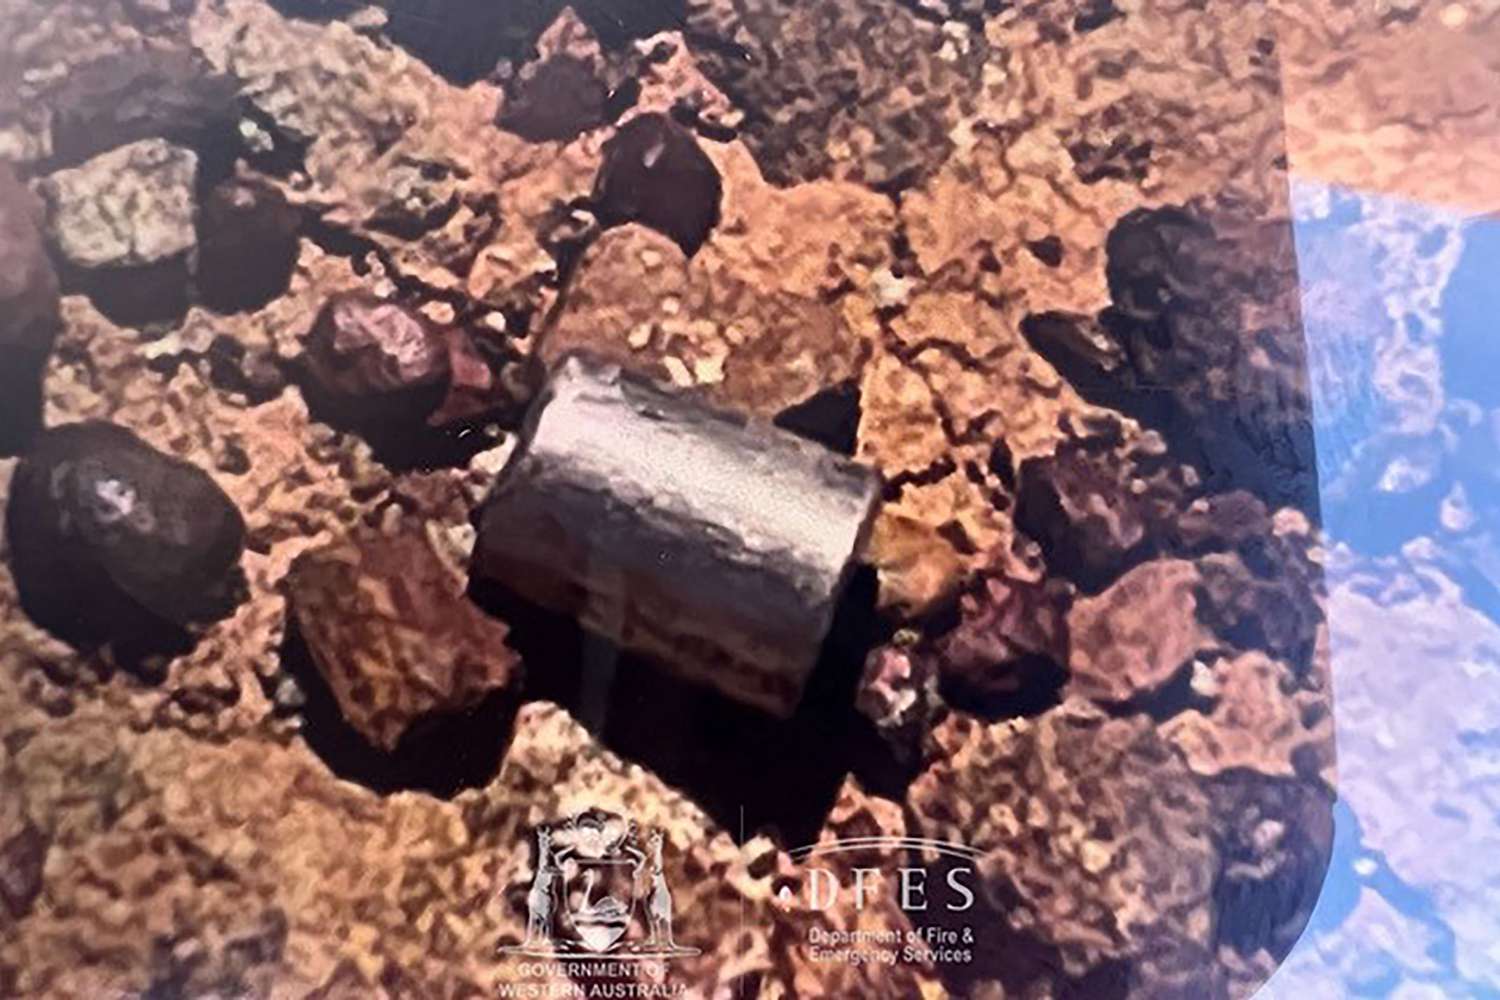 Vermisste radioaktive Kapsel in der Nähe des abgelegenen australischen Highways gefunden: „Nadel im Heuhaufen“